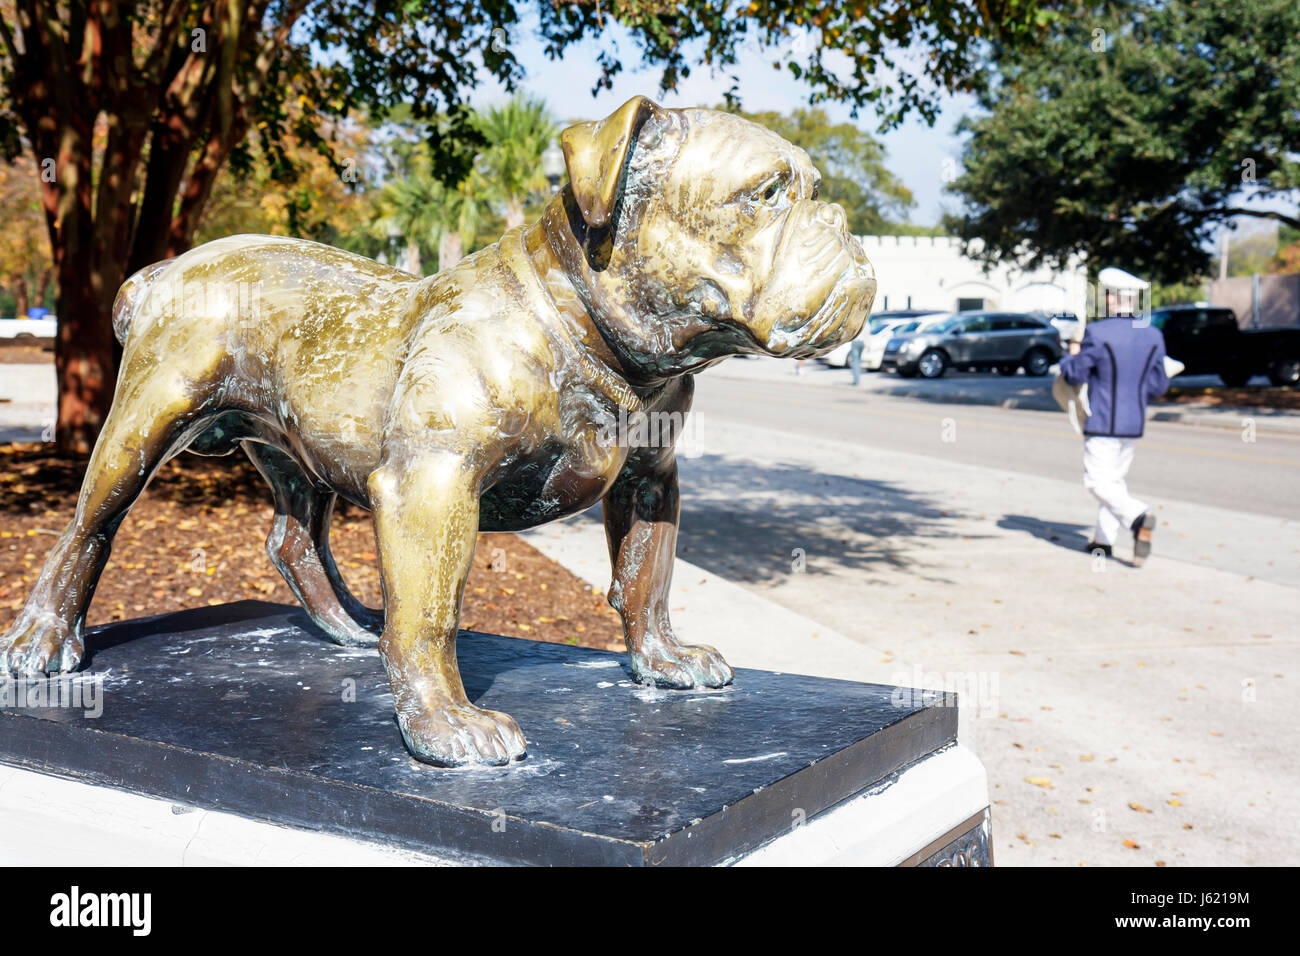 Charleston South Carolina, la Cittadella, il Collegio militare di, South Carolina, militare, istruzione, formazione, cadetto, disciplina, Bulldog Mascot, statua, bronzo Foto Stock